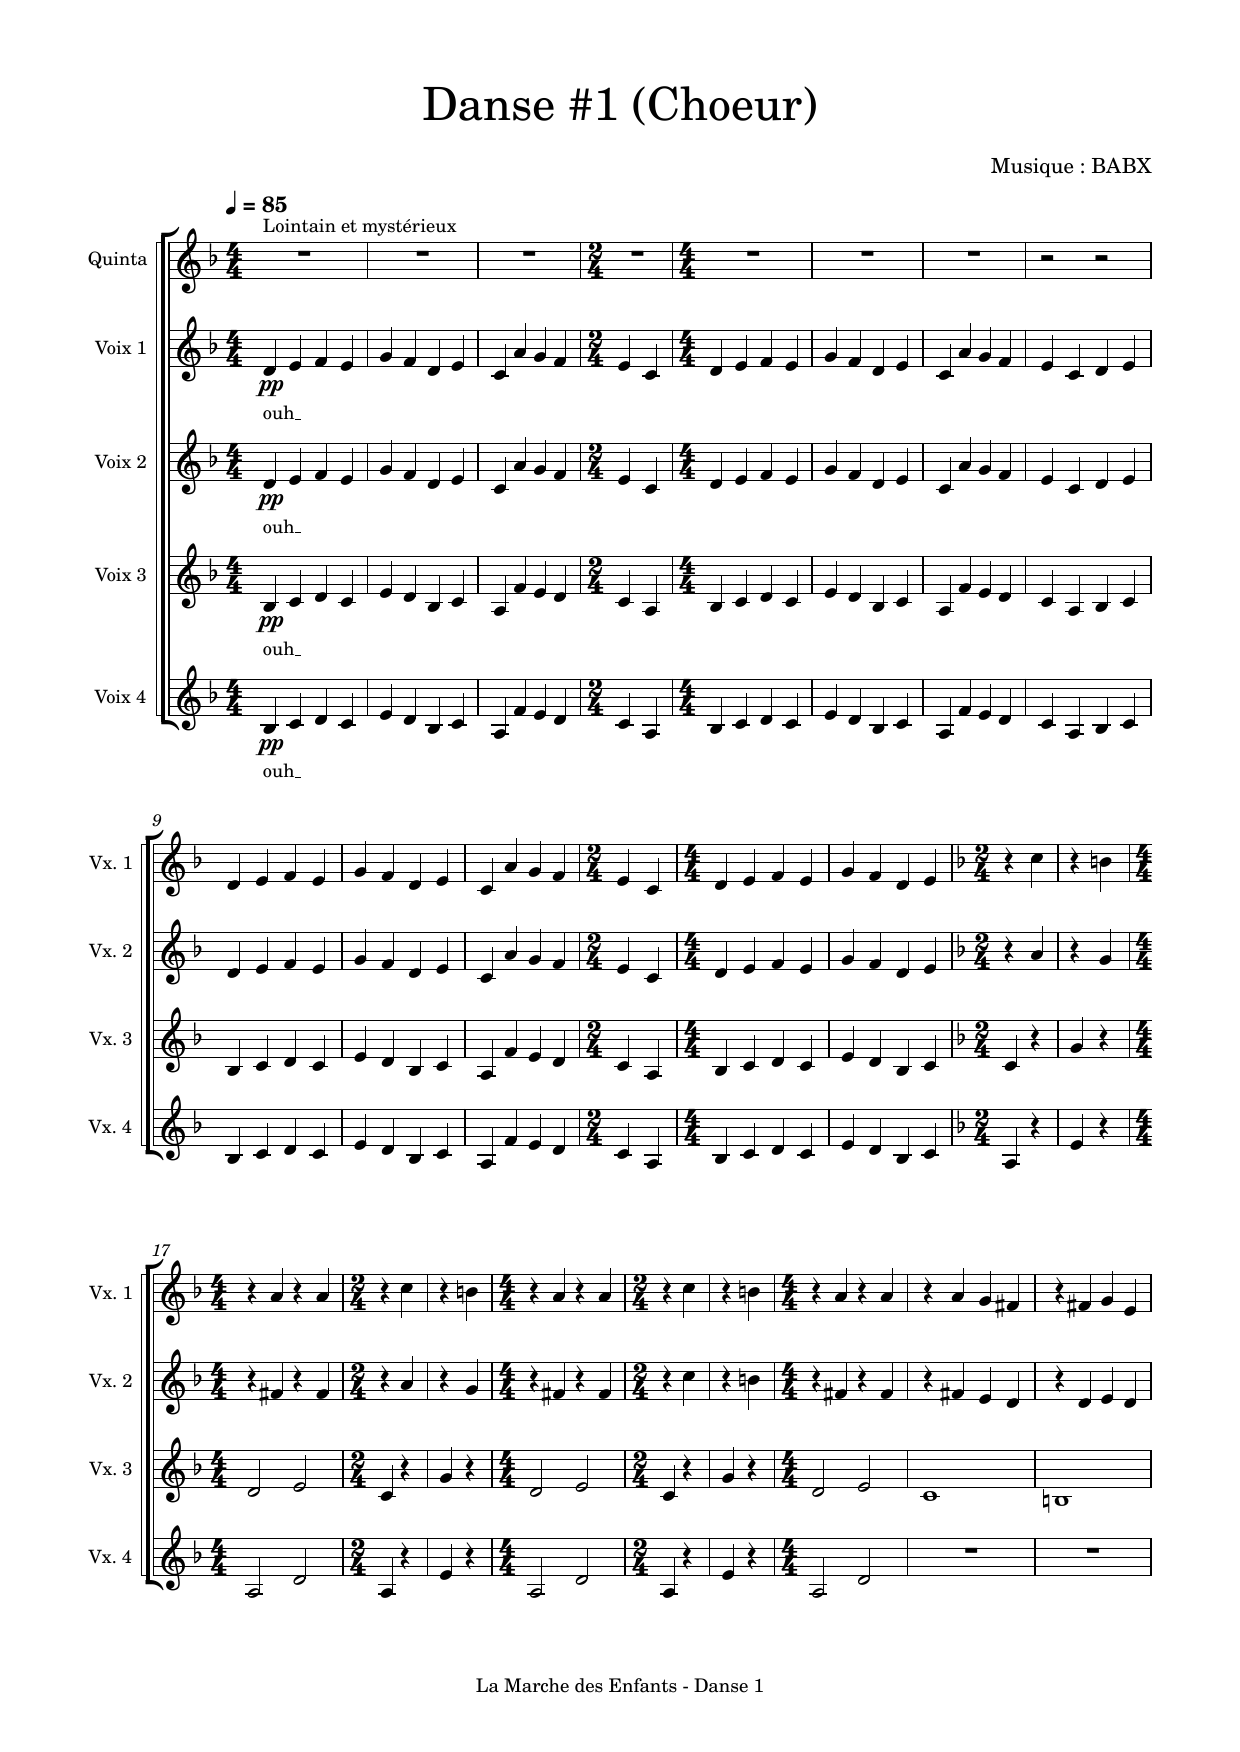 David Babin (Babx) Danse 1 Sheet Music Notes & Chords for Choir - Download or Print PDF